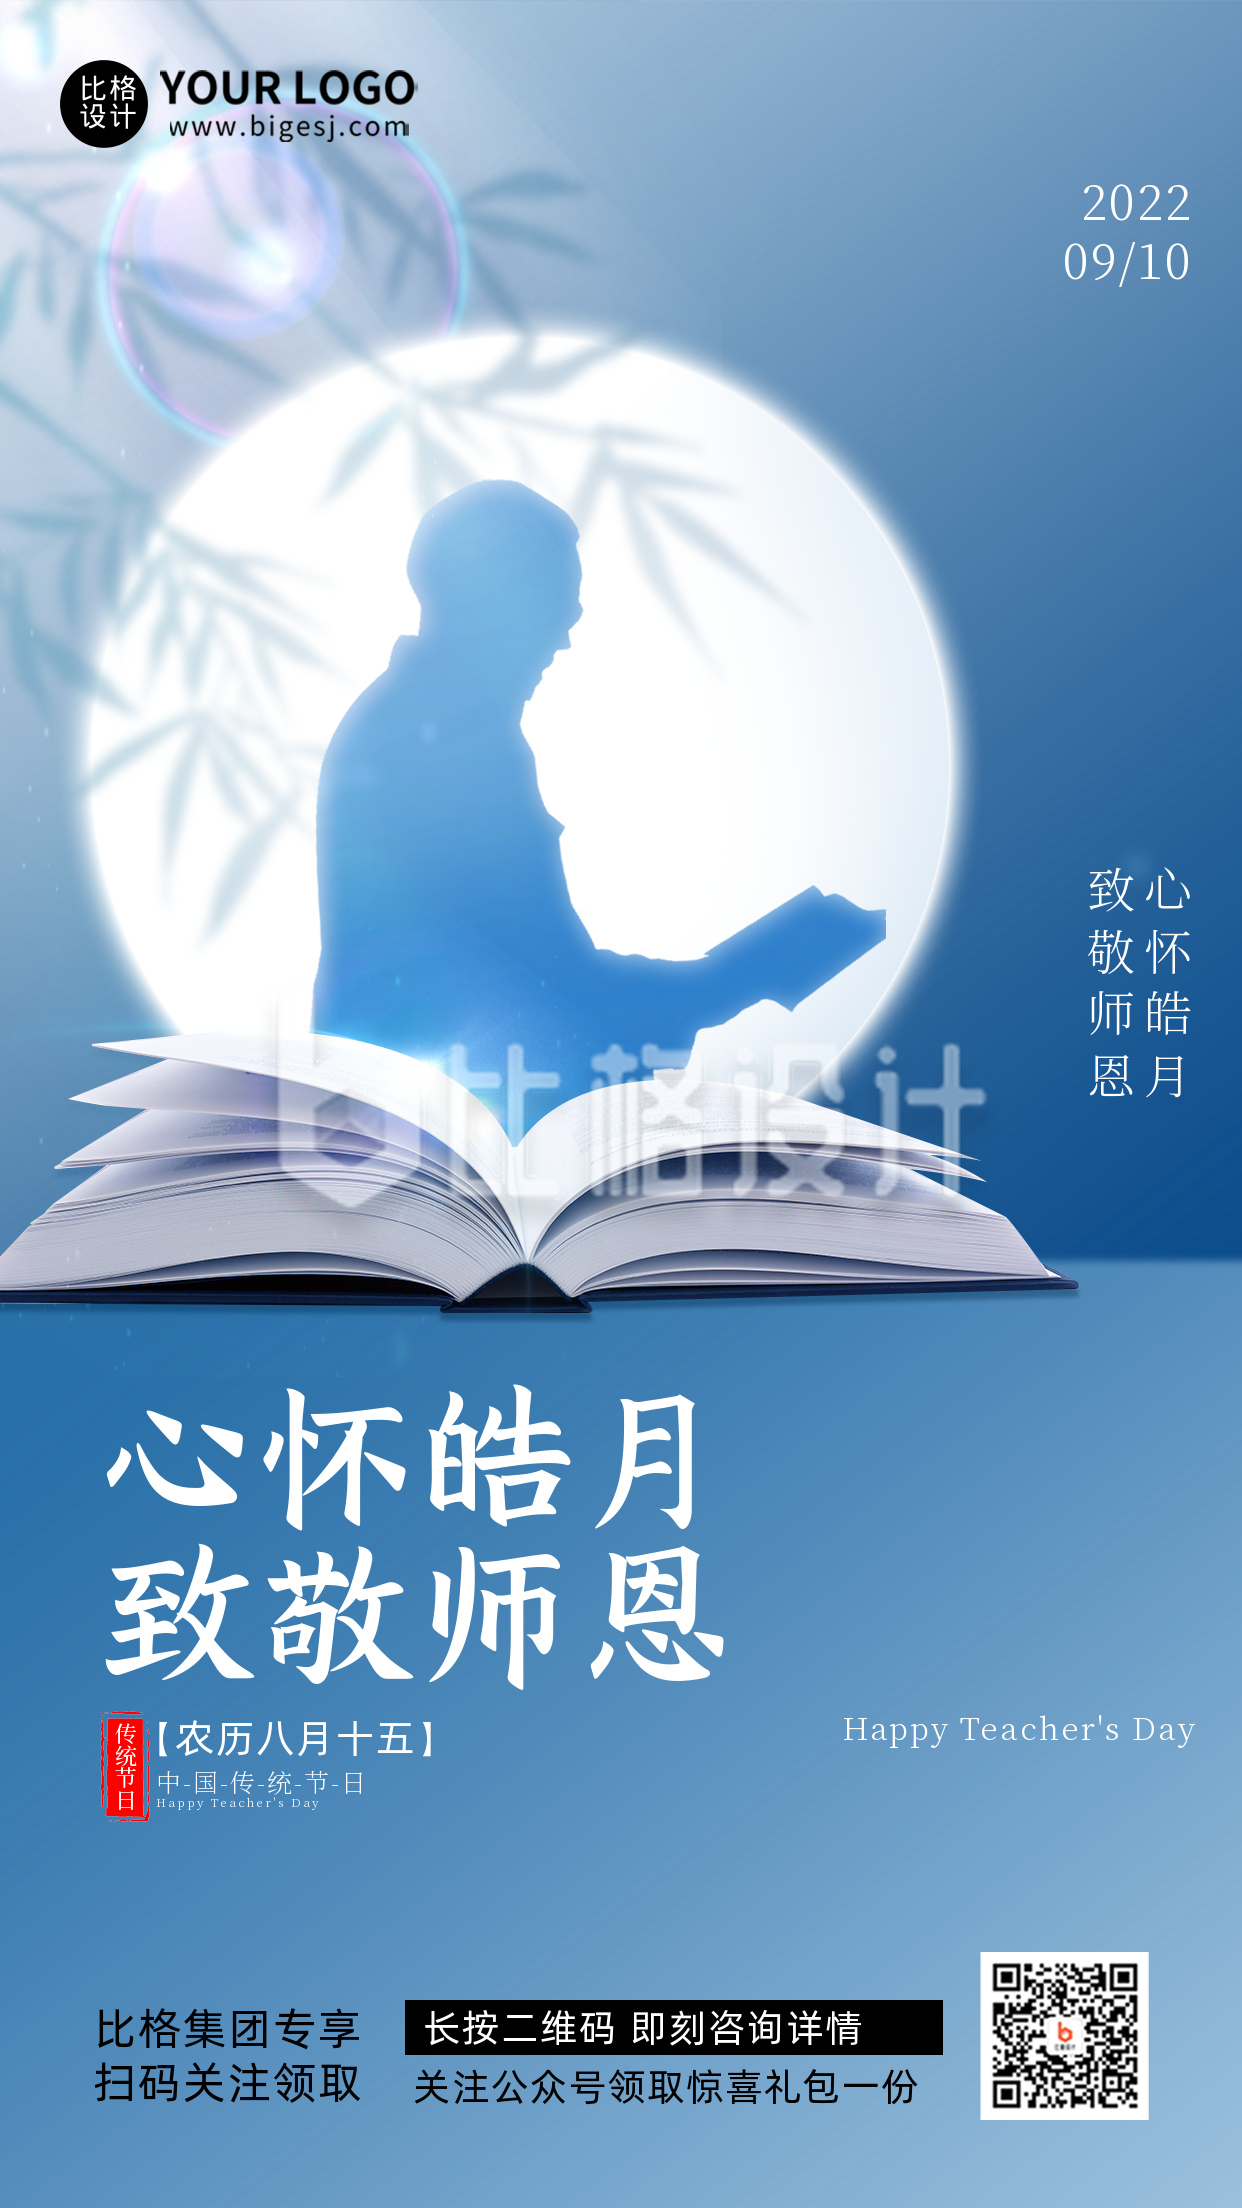 蓝色渐变质感教师节节日宣传手机海报